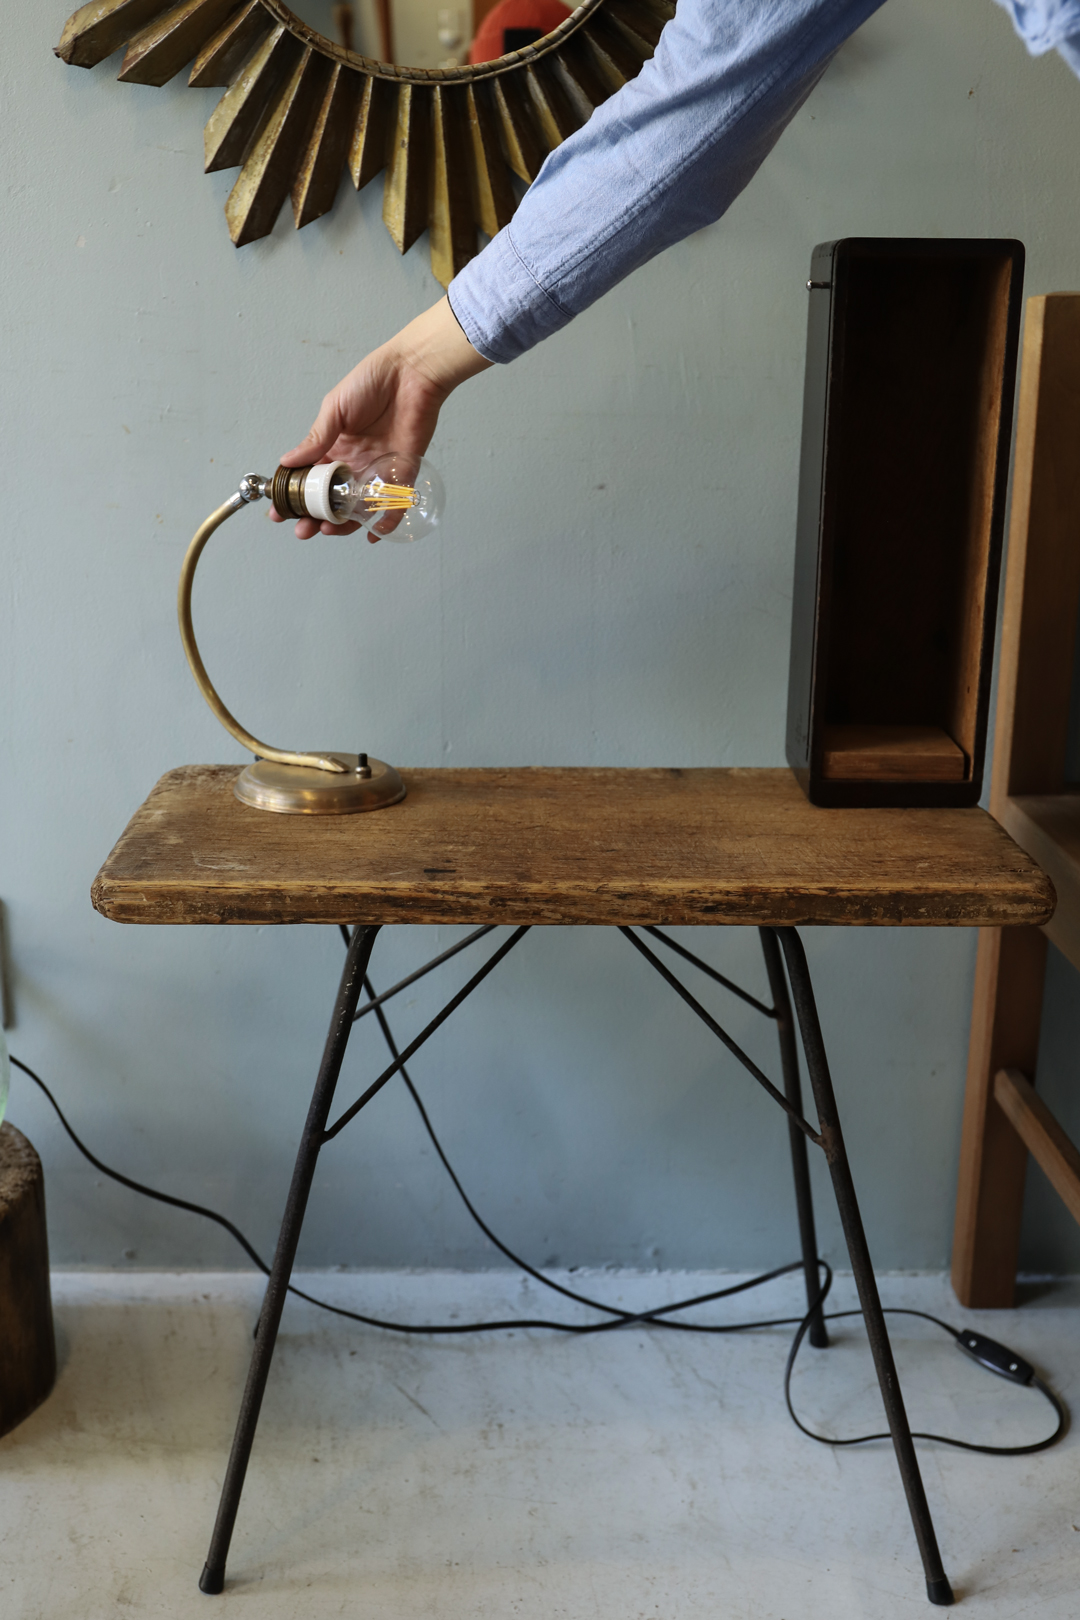 Antique Console Table with Lamp/アンティーク コンソールテーブル ランプ マガジンラック 間接照明 シャビーシック